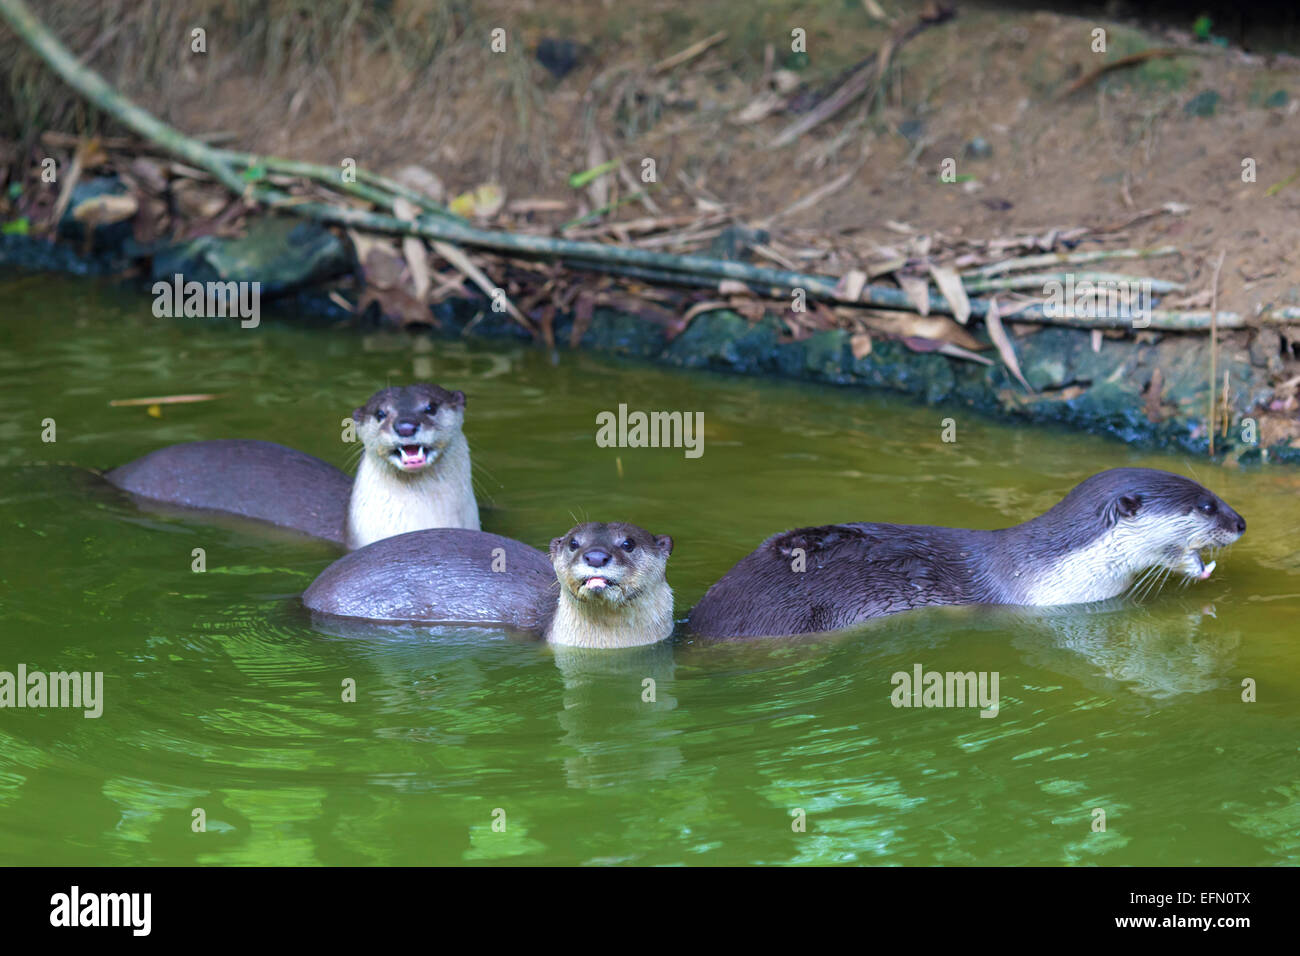 Eine orientalische kleine krallte Otter / Aonyx Cinerea / asiatische kleine krallte Otter Stockfoto